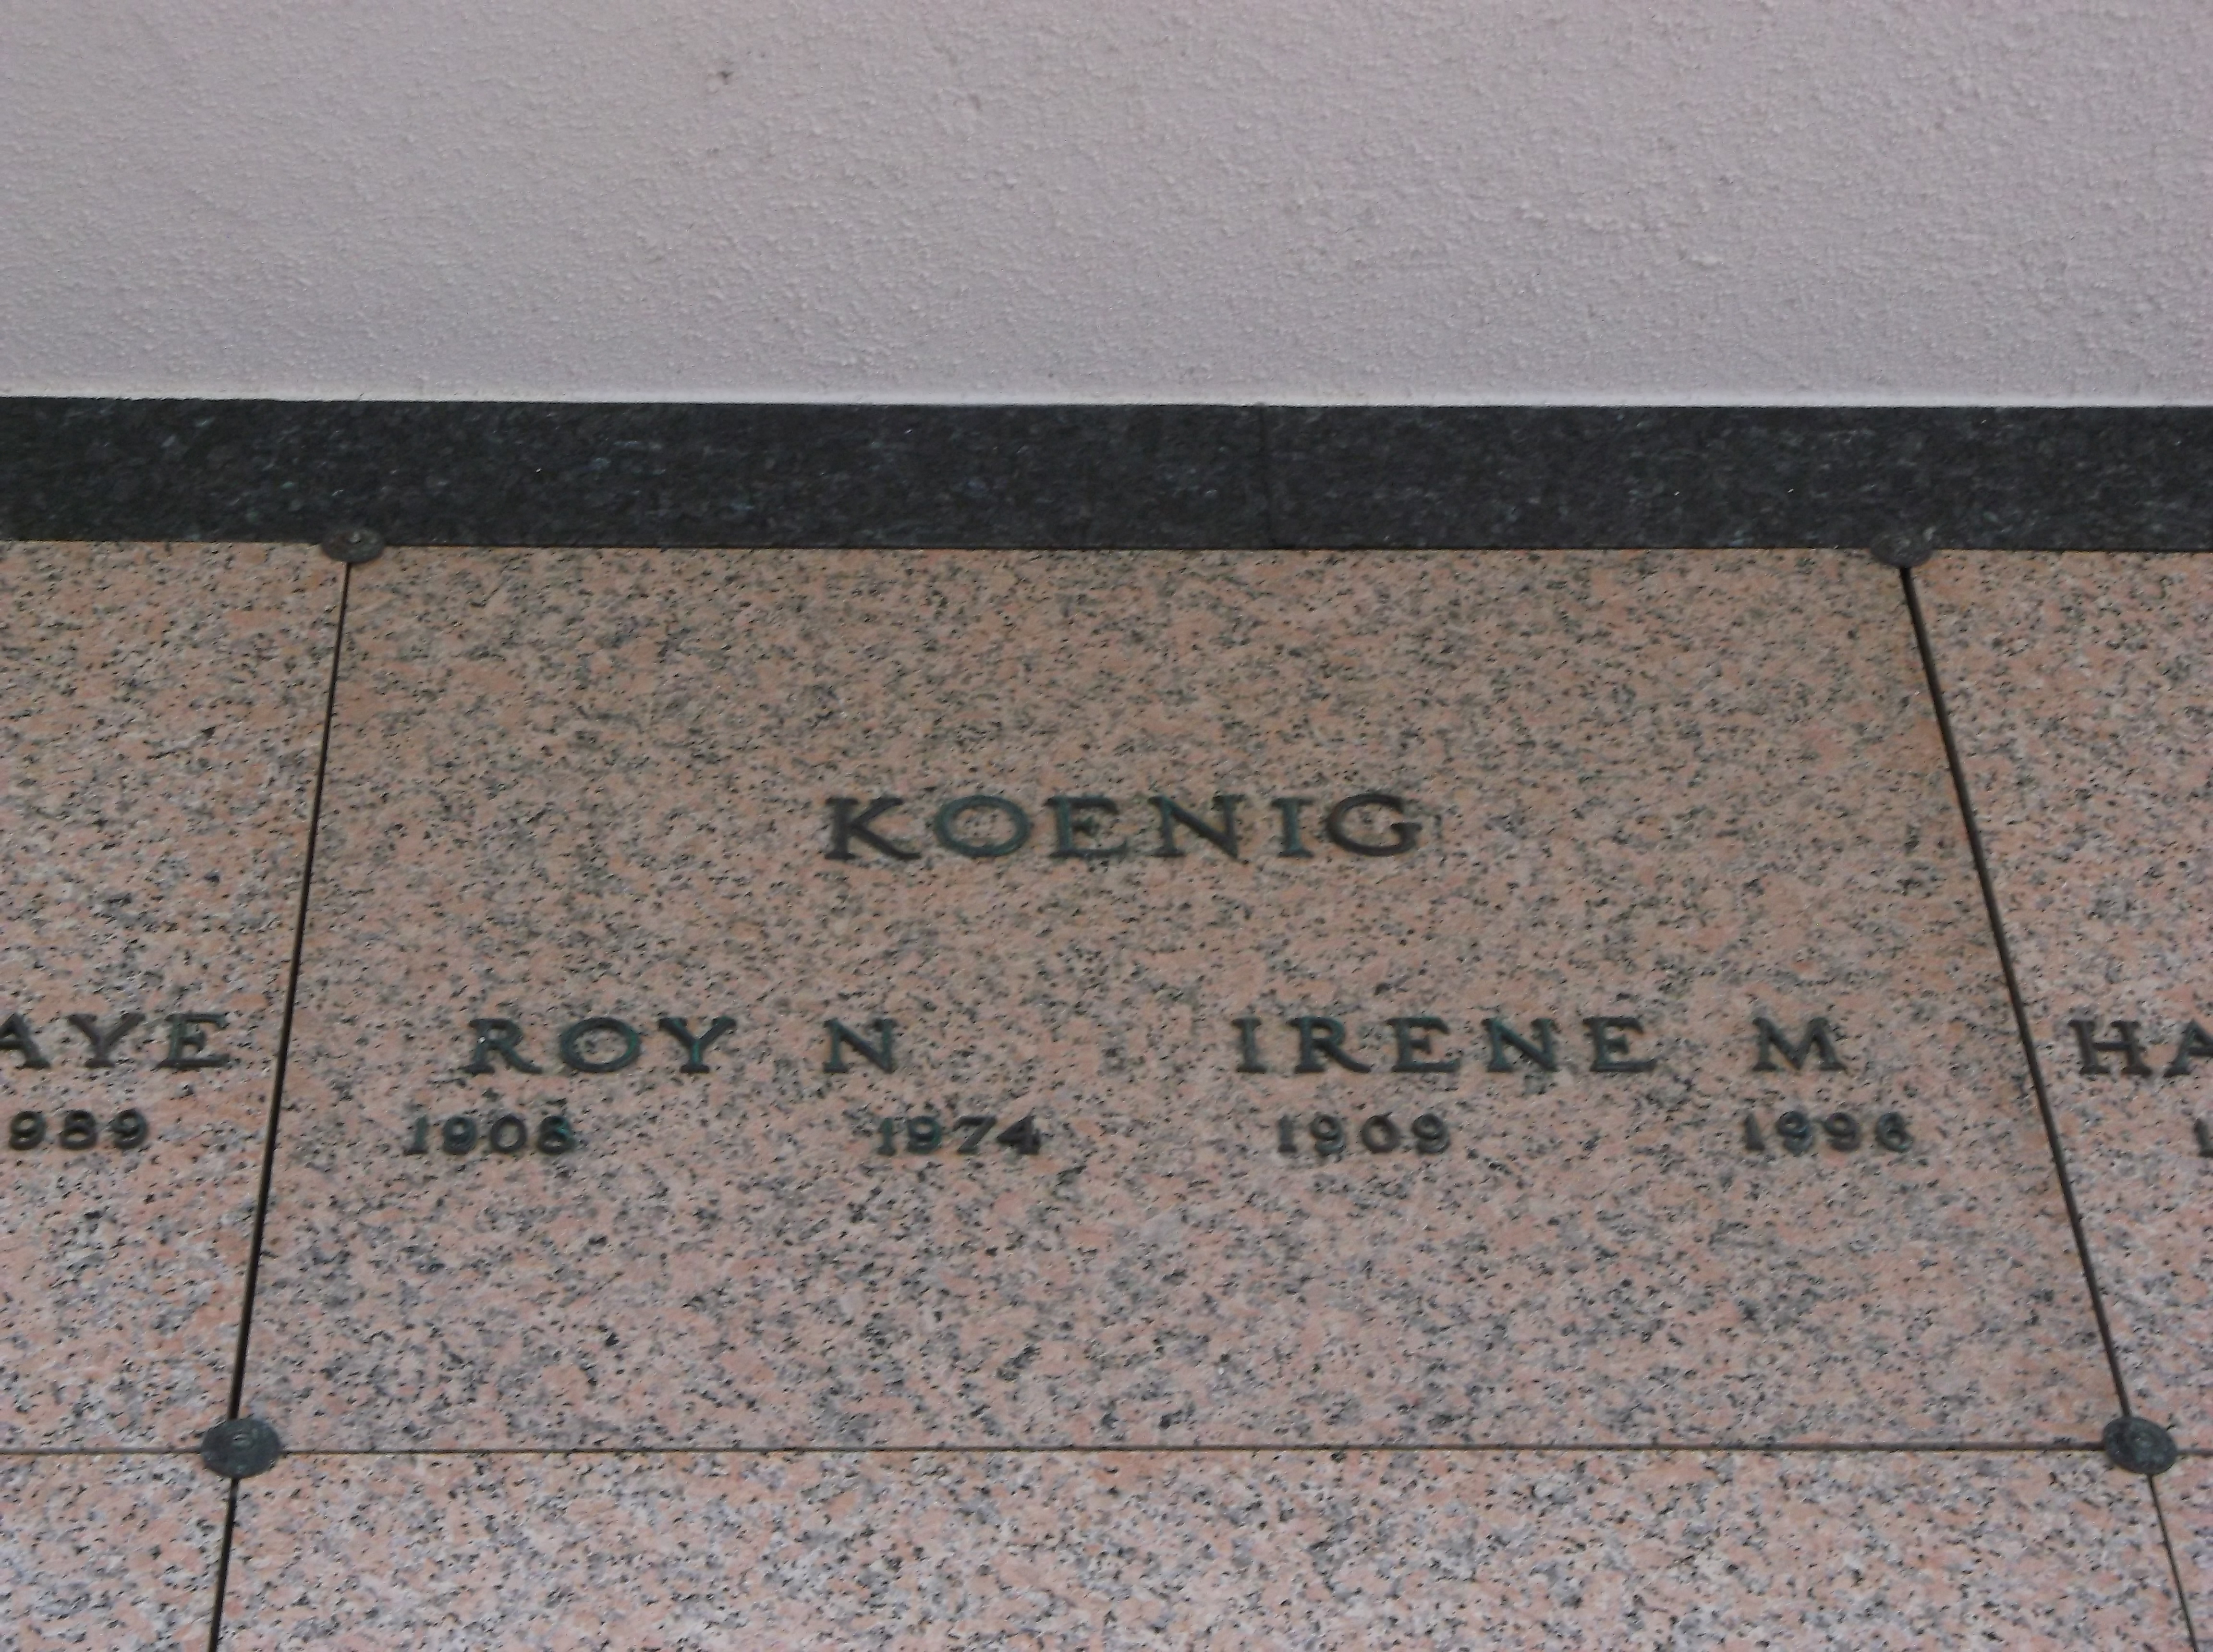 Roy N Koenig